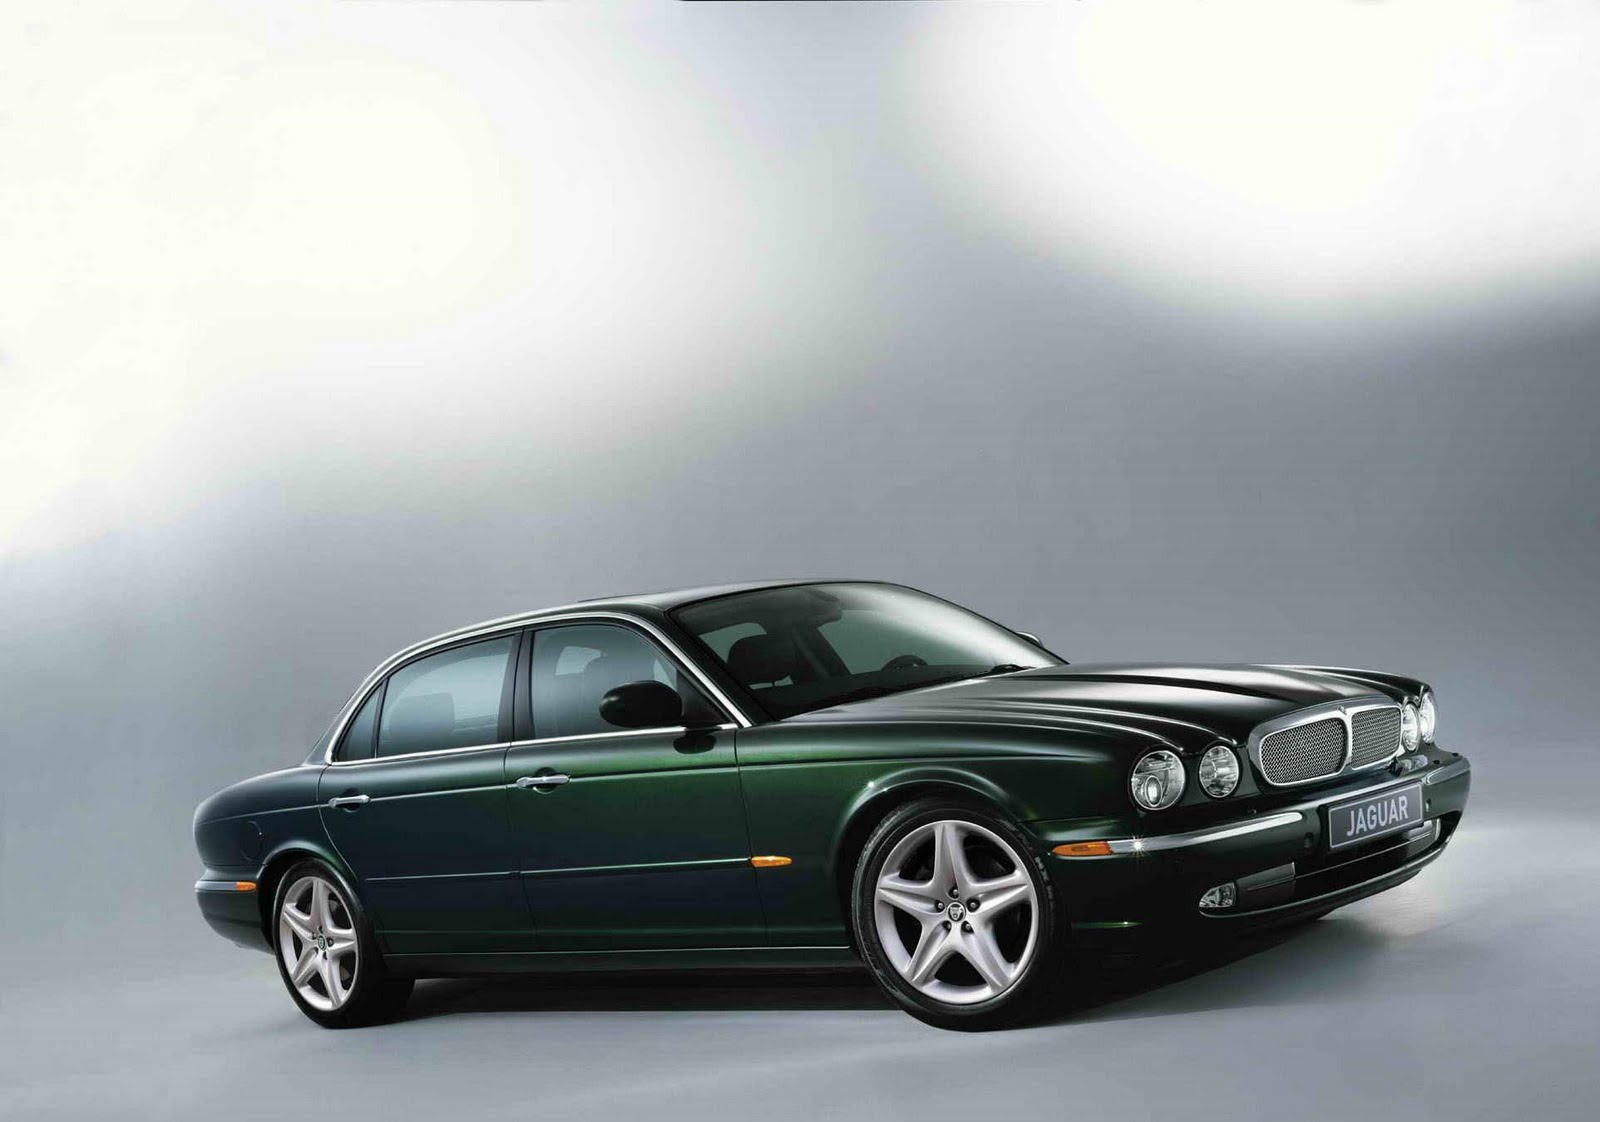 http://2.bp.blogspot.com/_jiLsBLaOvzE/SwVWQuFwmYI/AAAAAAAAECs/YuiQl6fx4gs/s1600/cheap+car+Jaguar+XJ.jpg